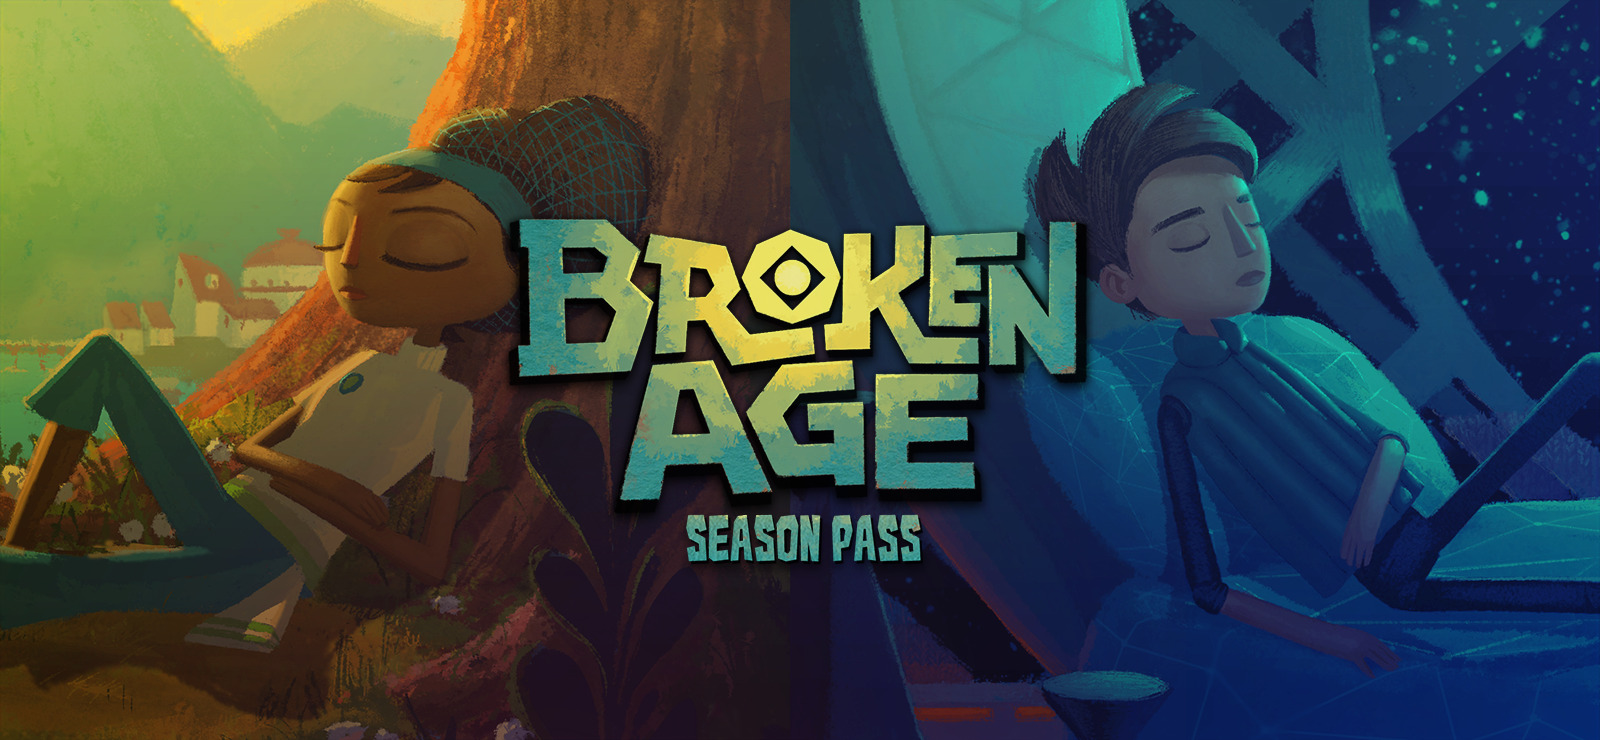 Broken age act 2 mac download torrent